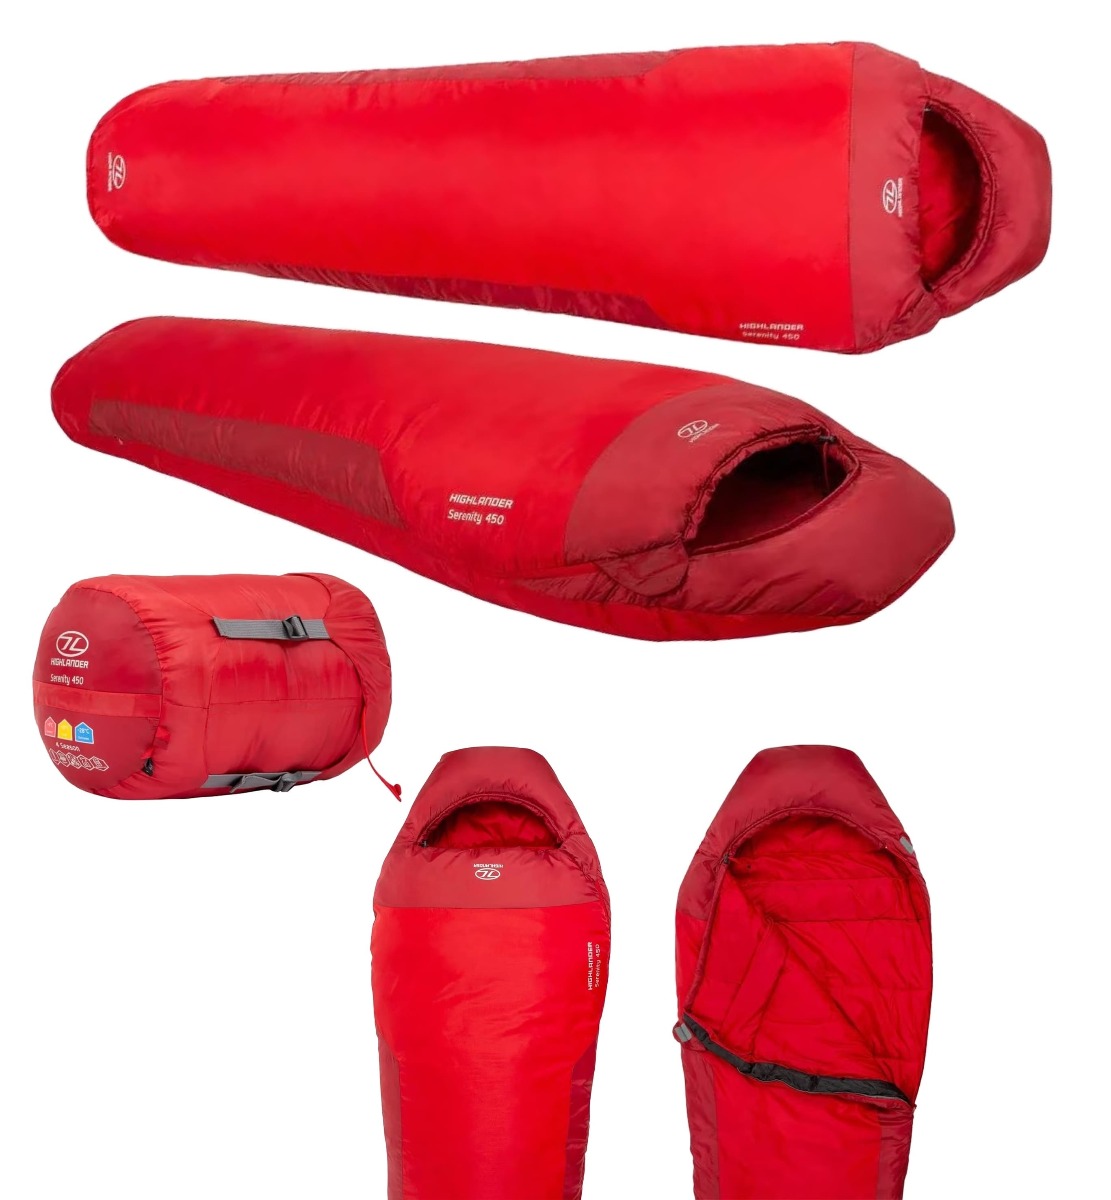 Izkusite udobje in toplino s Highlander Outdoor Serenity Mummy 450 spalno vrečo. Idealen partner za planinarjenje, kampiranje in ostale dejavnosti na prostem. Ohranja toploto od 4°C do 10°C.